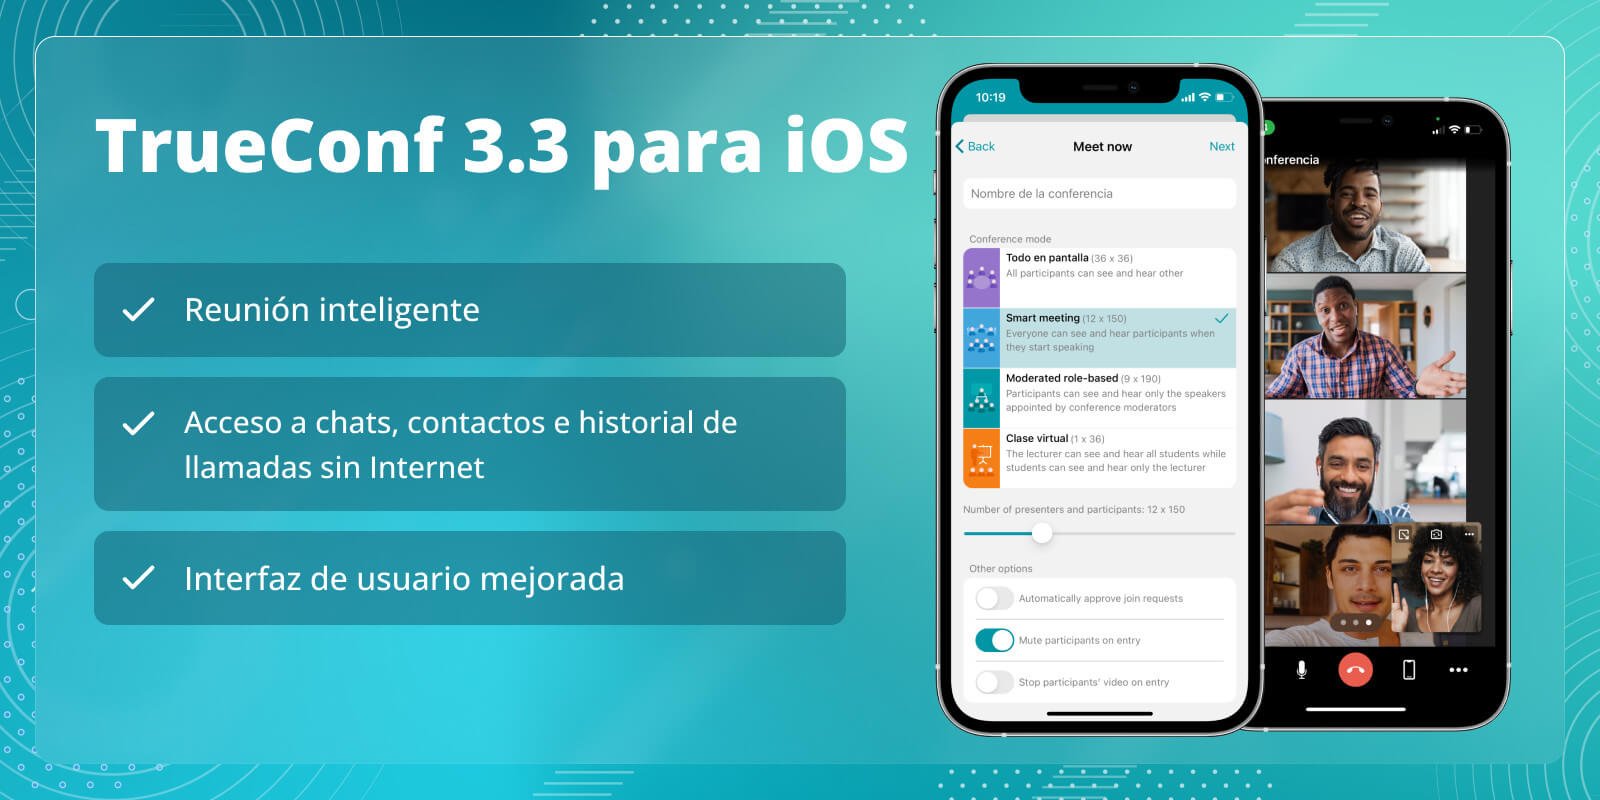 TrueConf 3.3 para iOS: nueva interfaz de usuario, modo de reunión inteligente, acceso sin conexión a chats, contactos e historial de llamadas 8